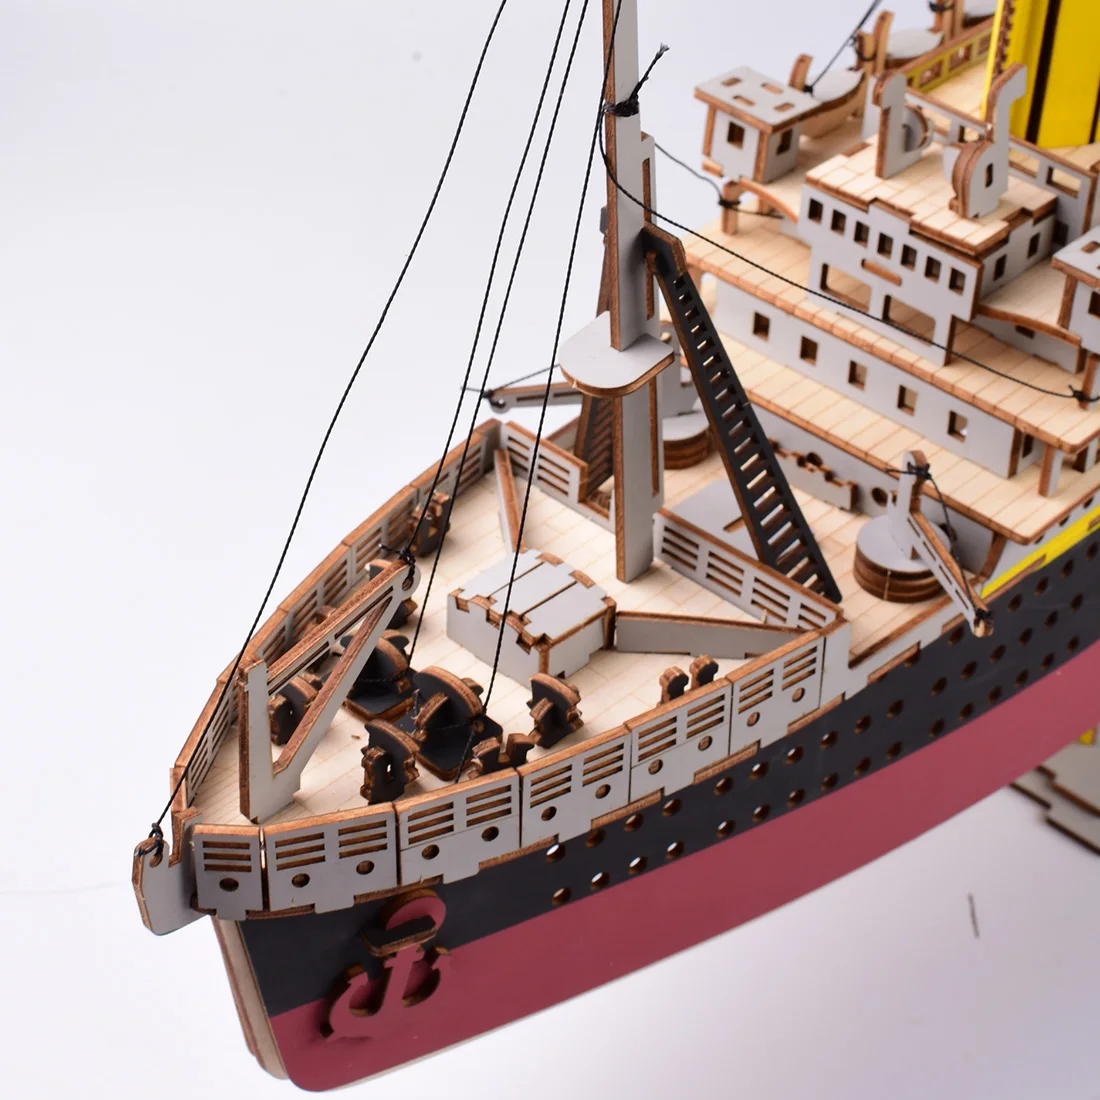 371 шт высокоточная лазерная резка головоломка 3D деревянная модель головоломки строительные наборы Декор-корабль лодка в море